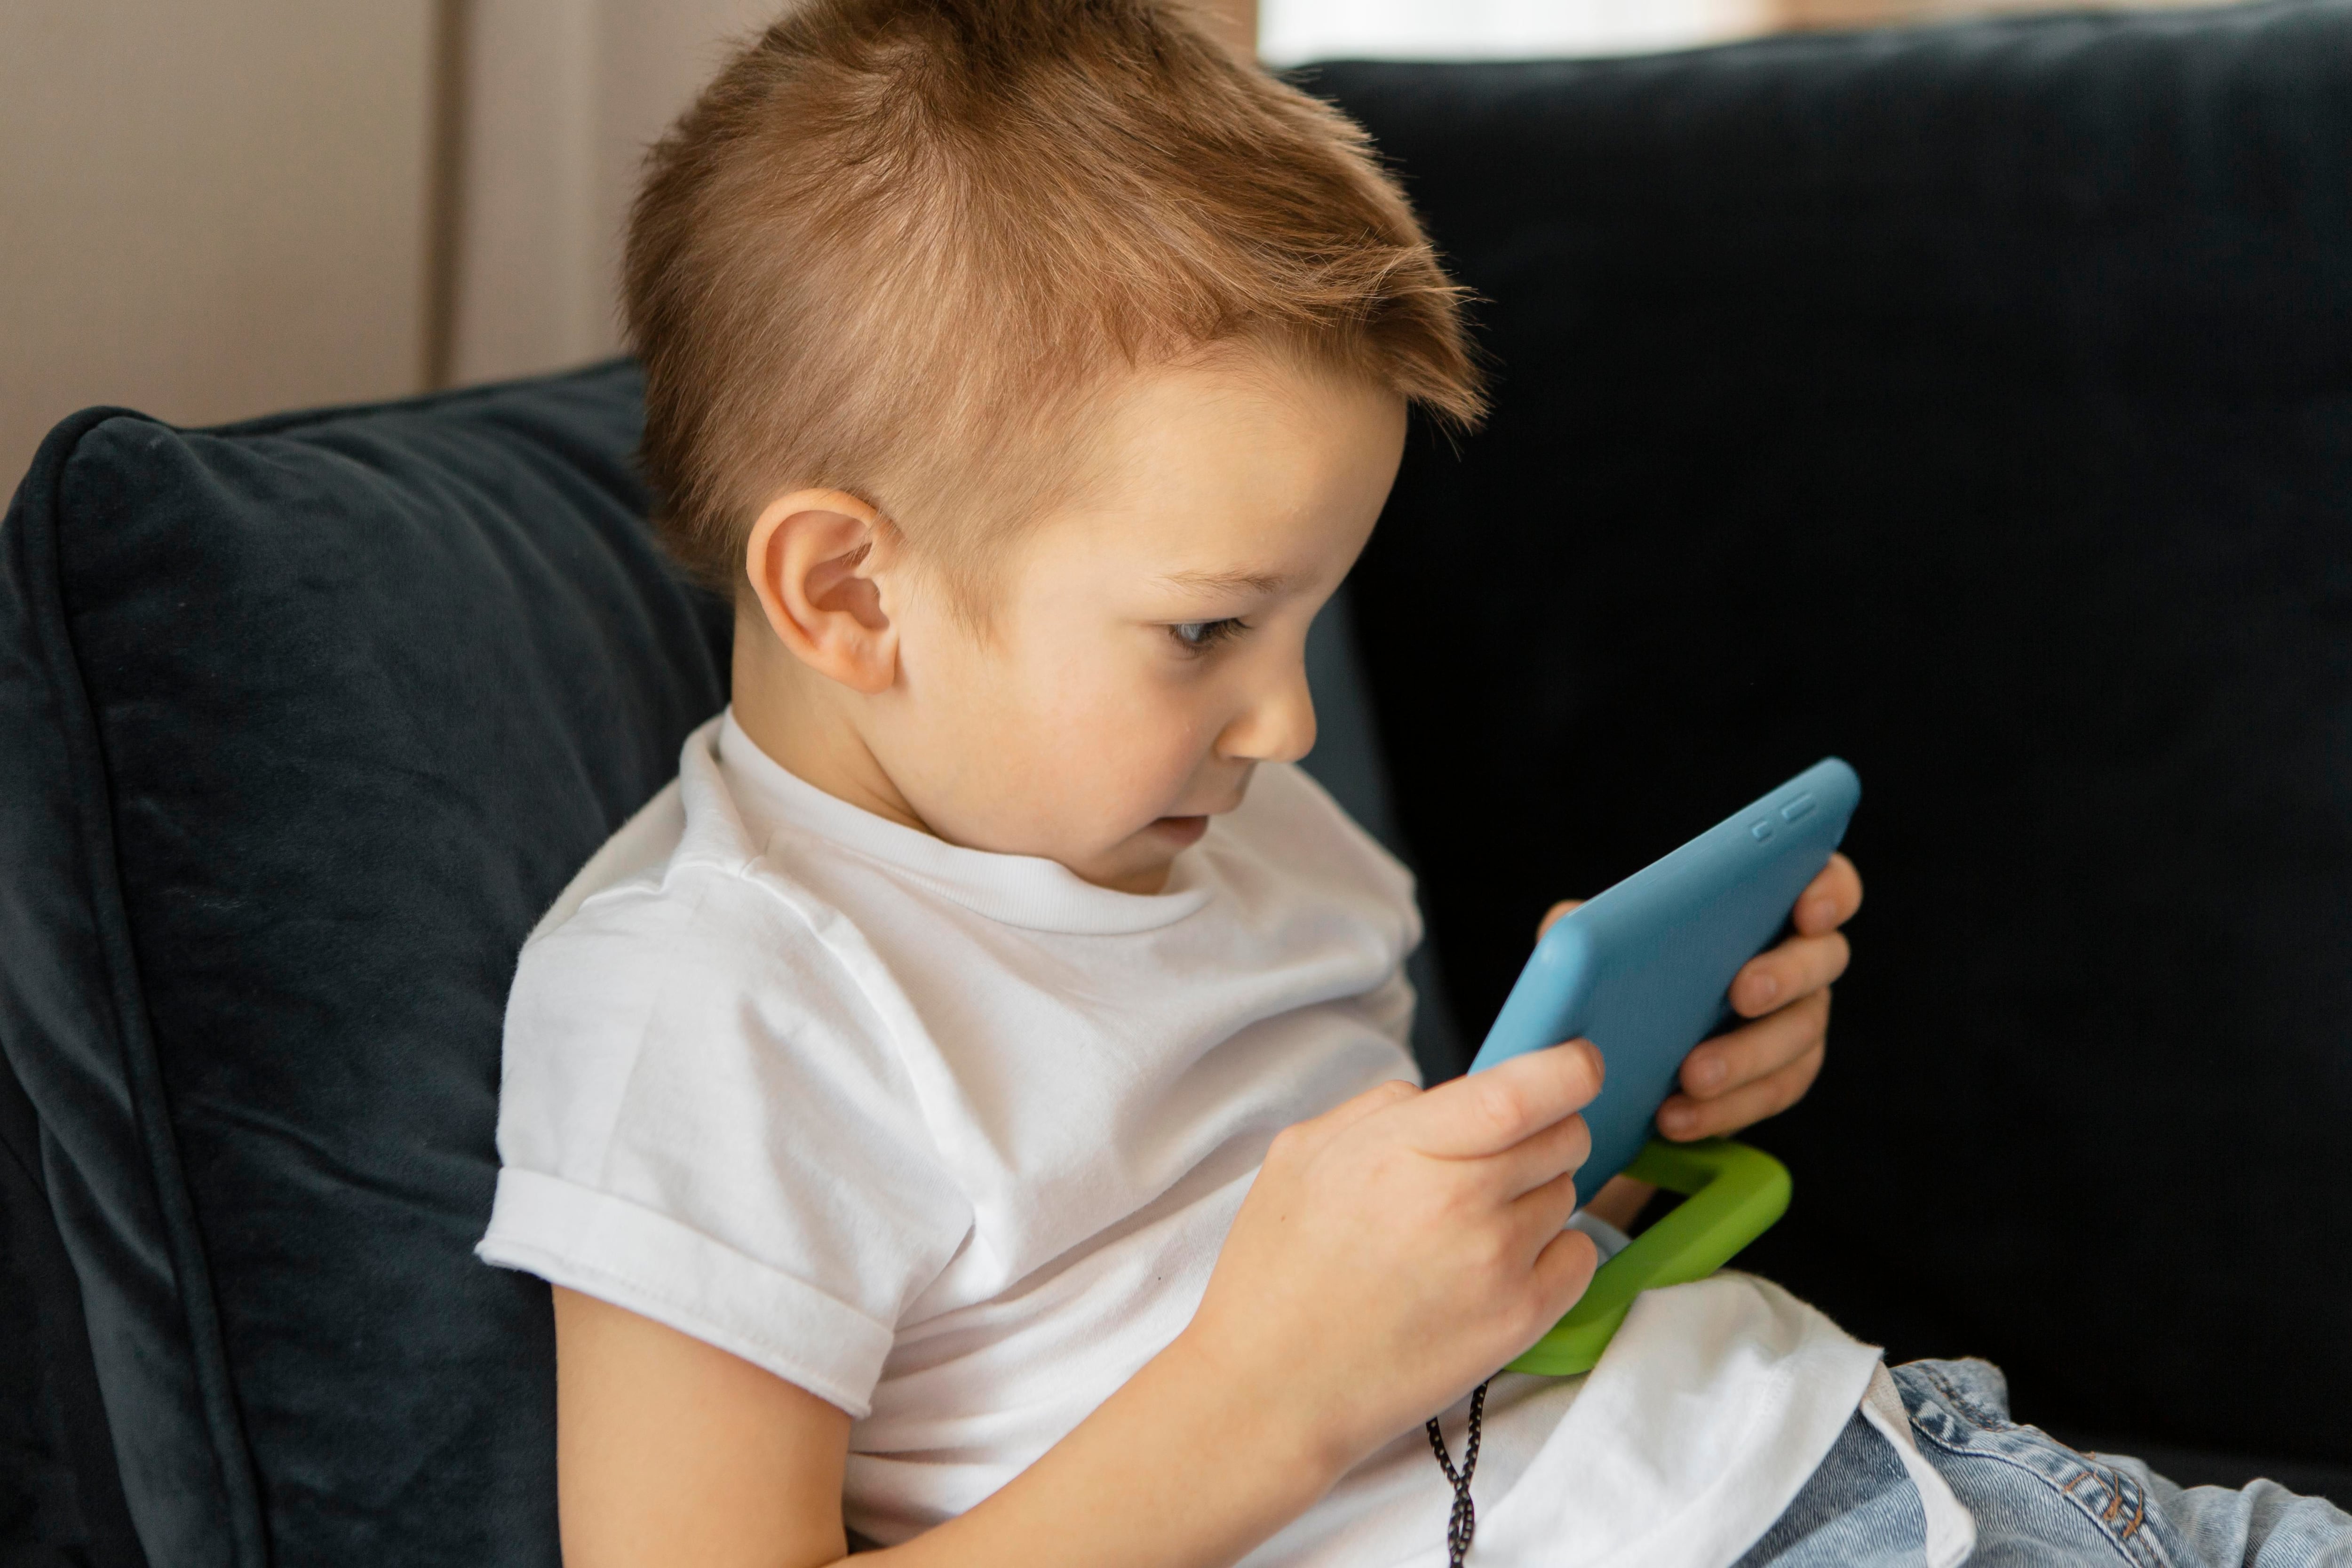 Los menores de edad pueden ver afectado su aprendizaje y desarrollo lingüístico por el consumo en pantallas. (Freepik)